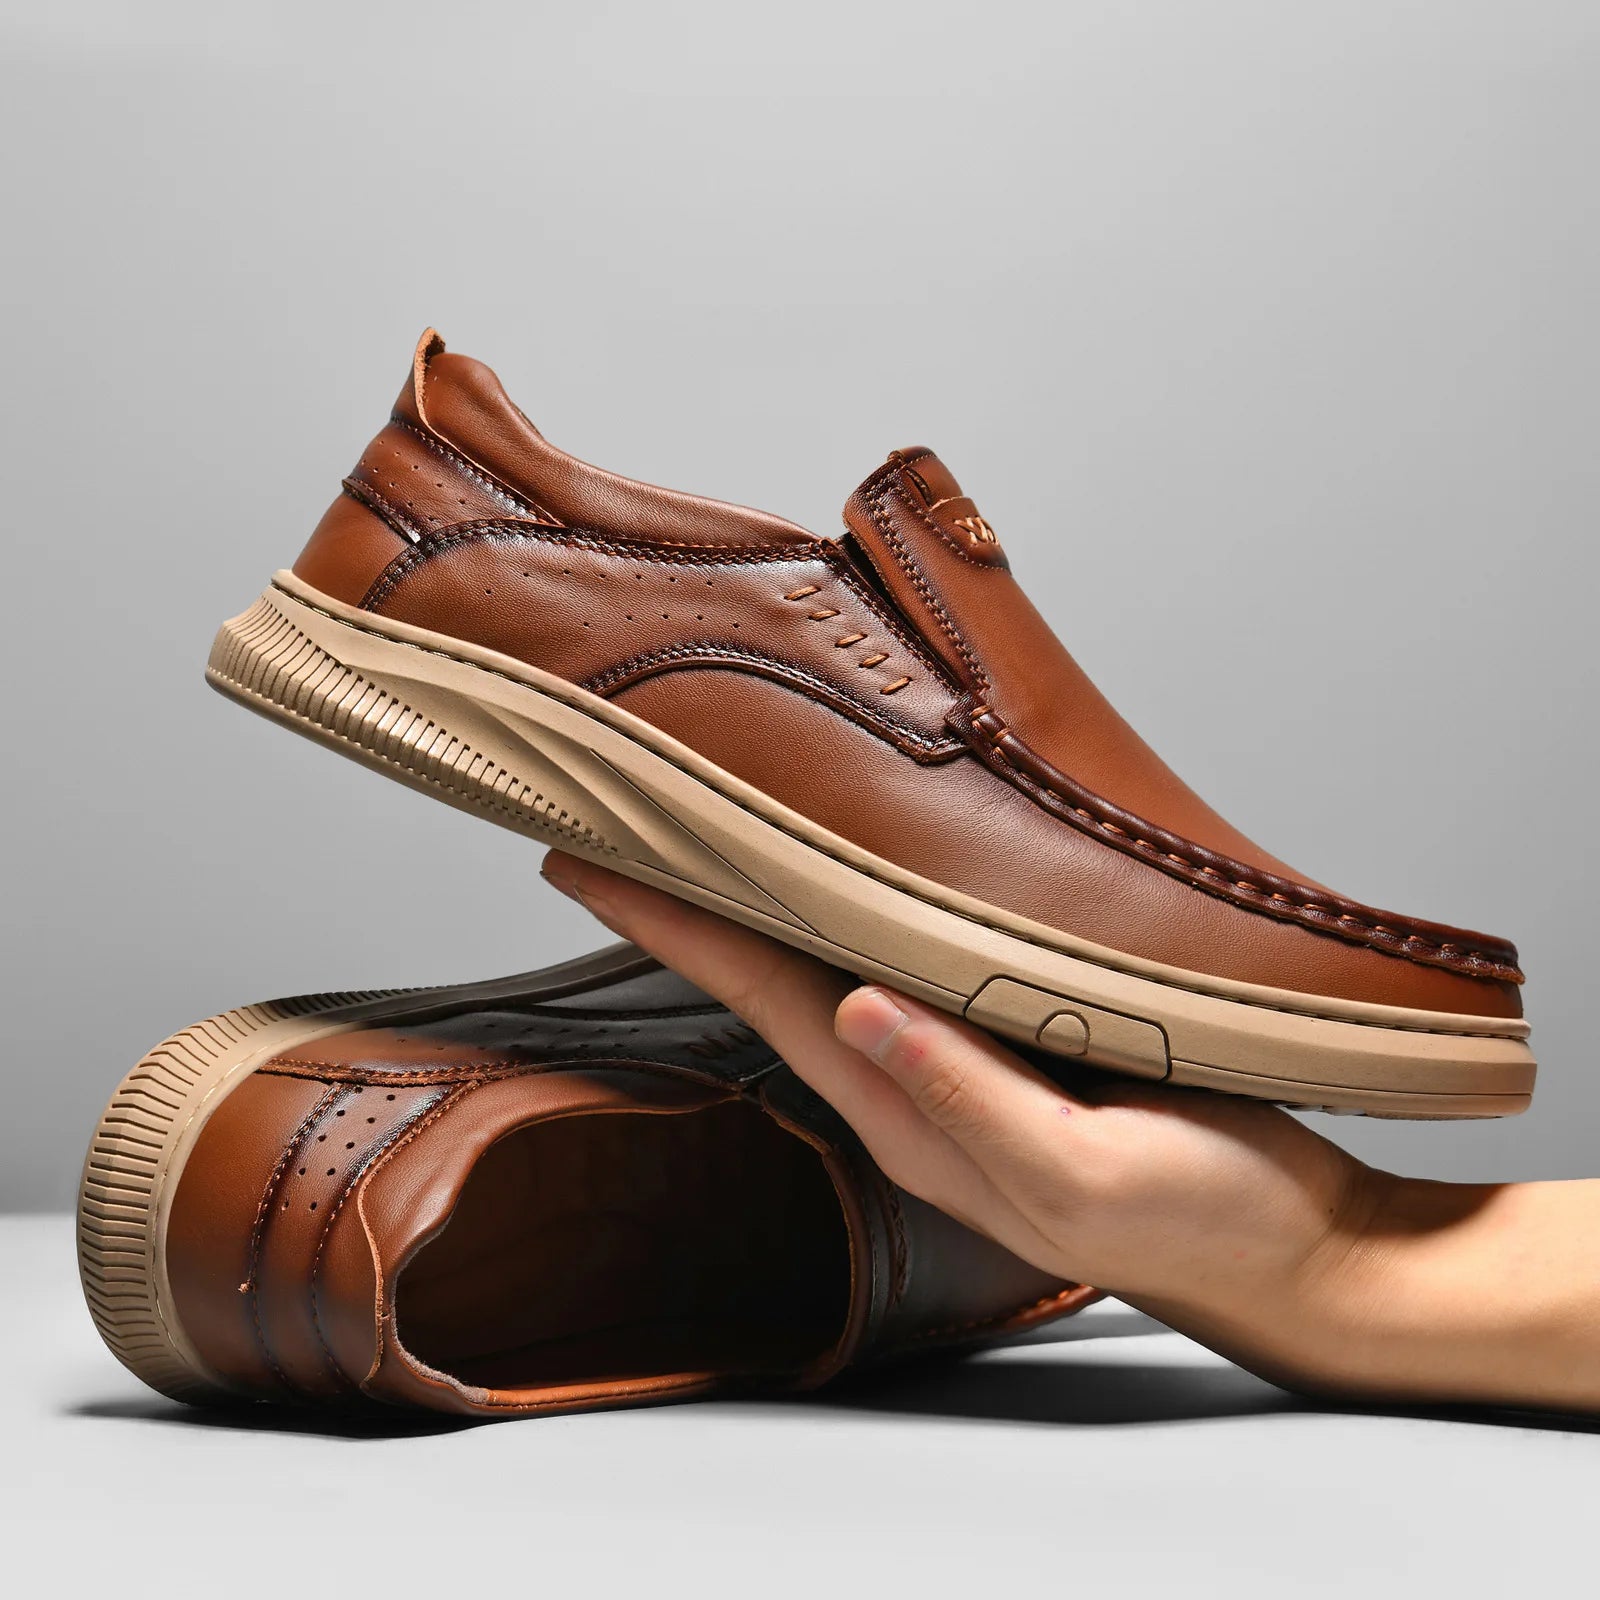 Carlo™ Schuhe aus echtem Rindsleder: Besonders bequem und atmungsaktiv